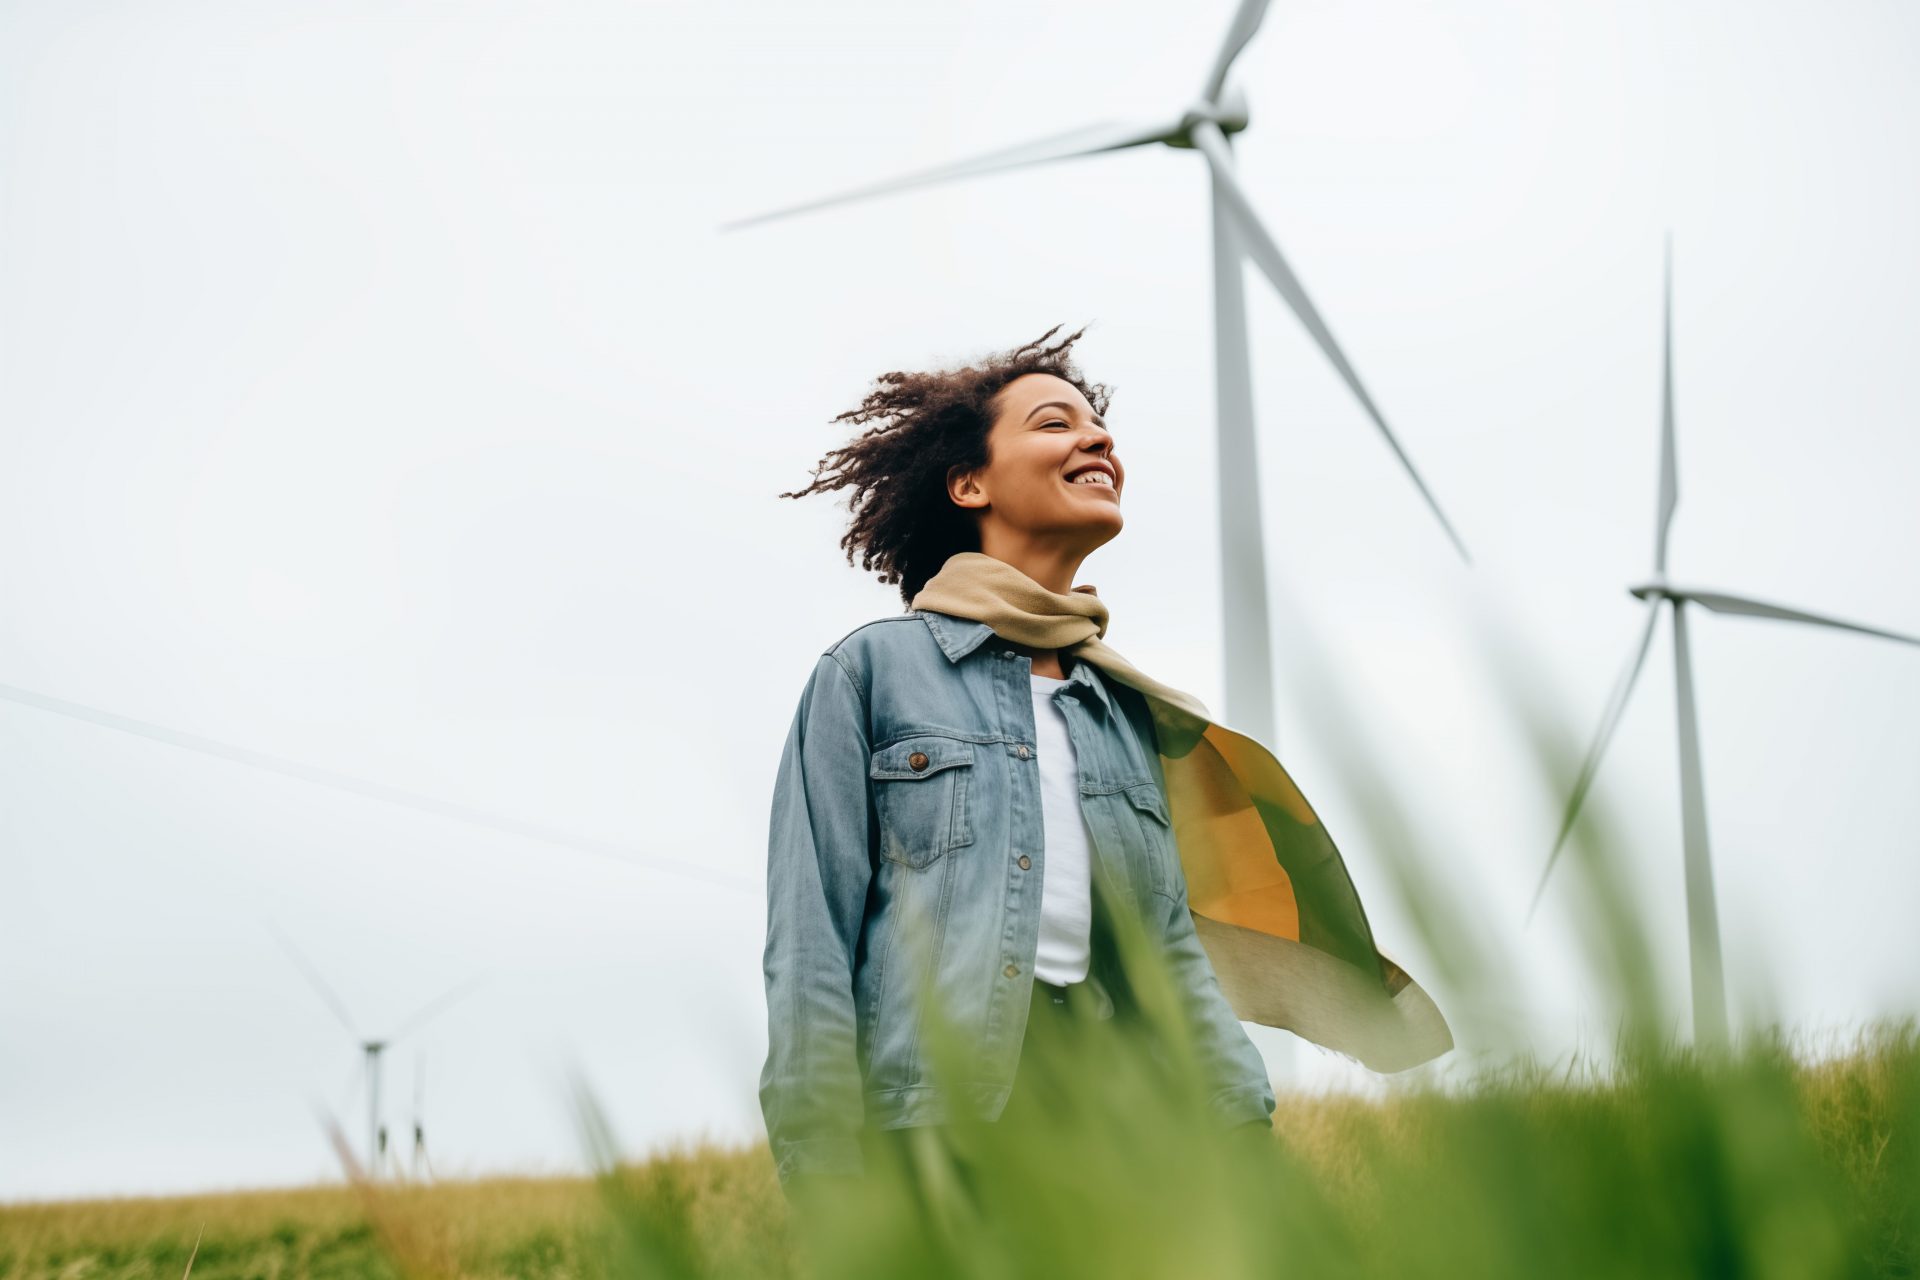 Una mujer joven está de pie en un parque eólico, el viento sopla su bufanda alrededor de sus hombros y en su pelo, varias turbinas eólicas en el fondo.